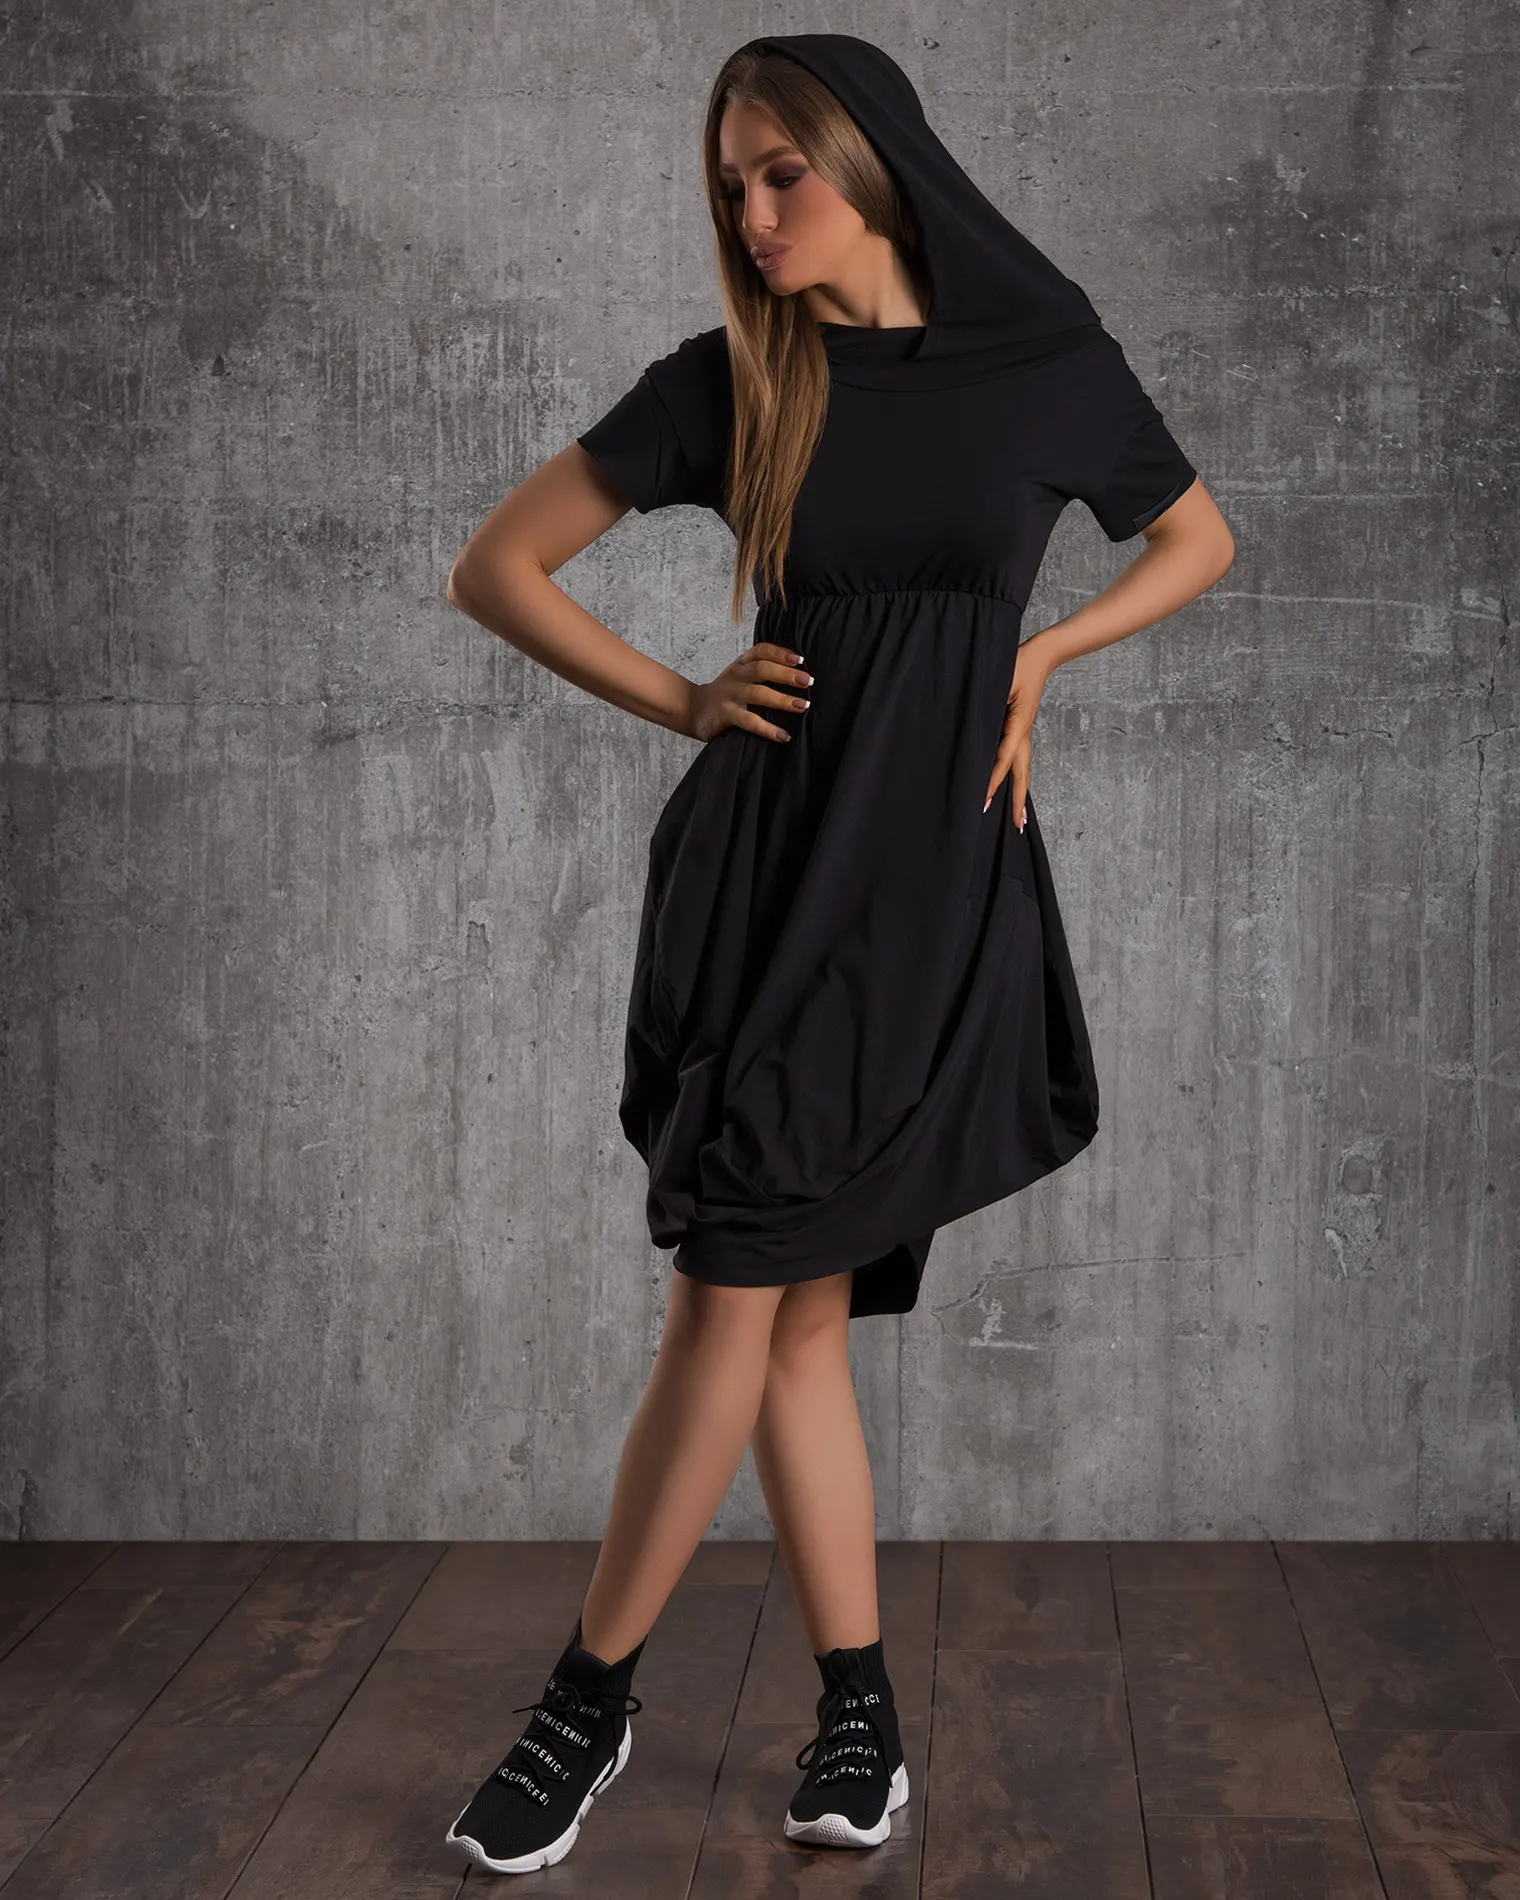 Sombra Hooded Dress, Black Color